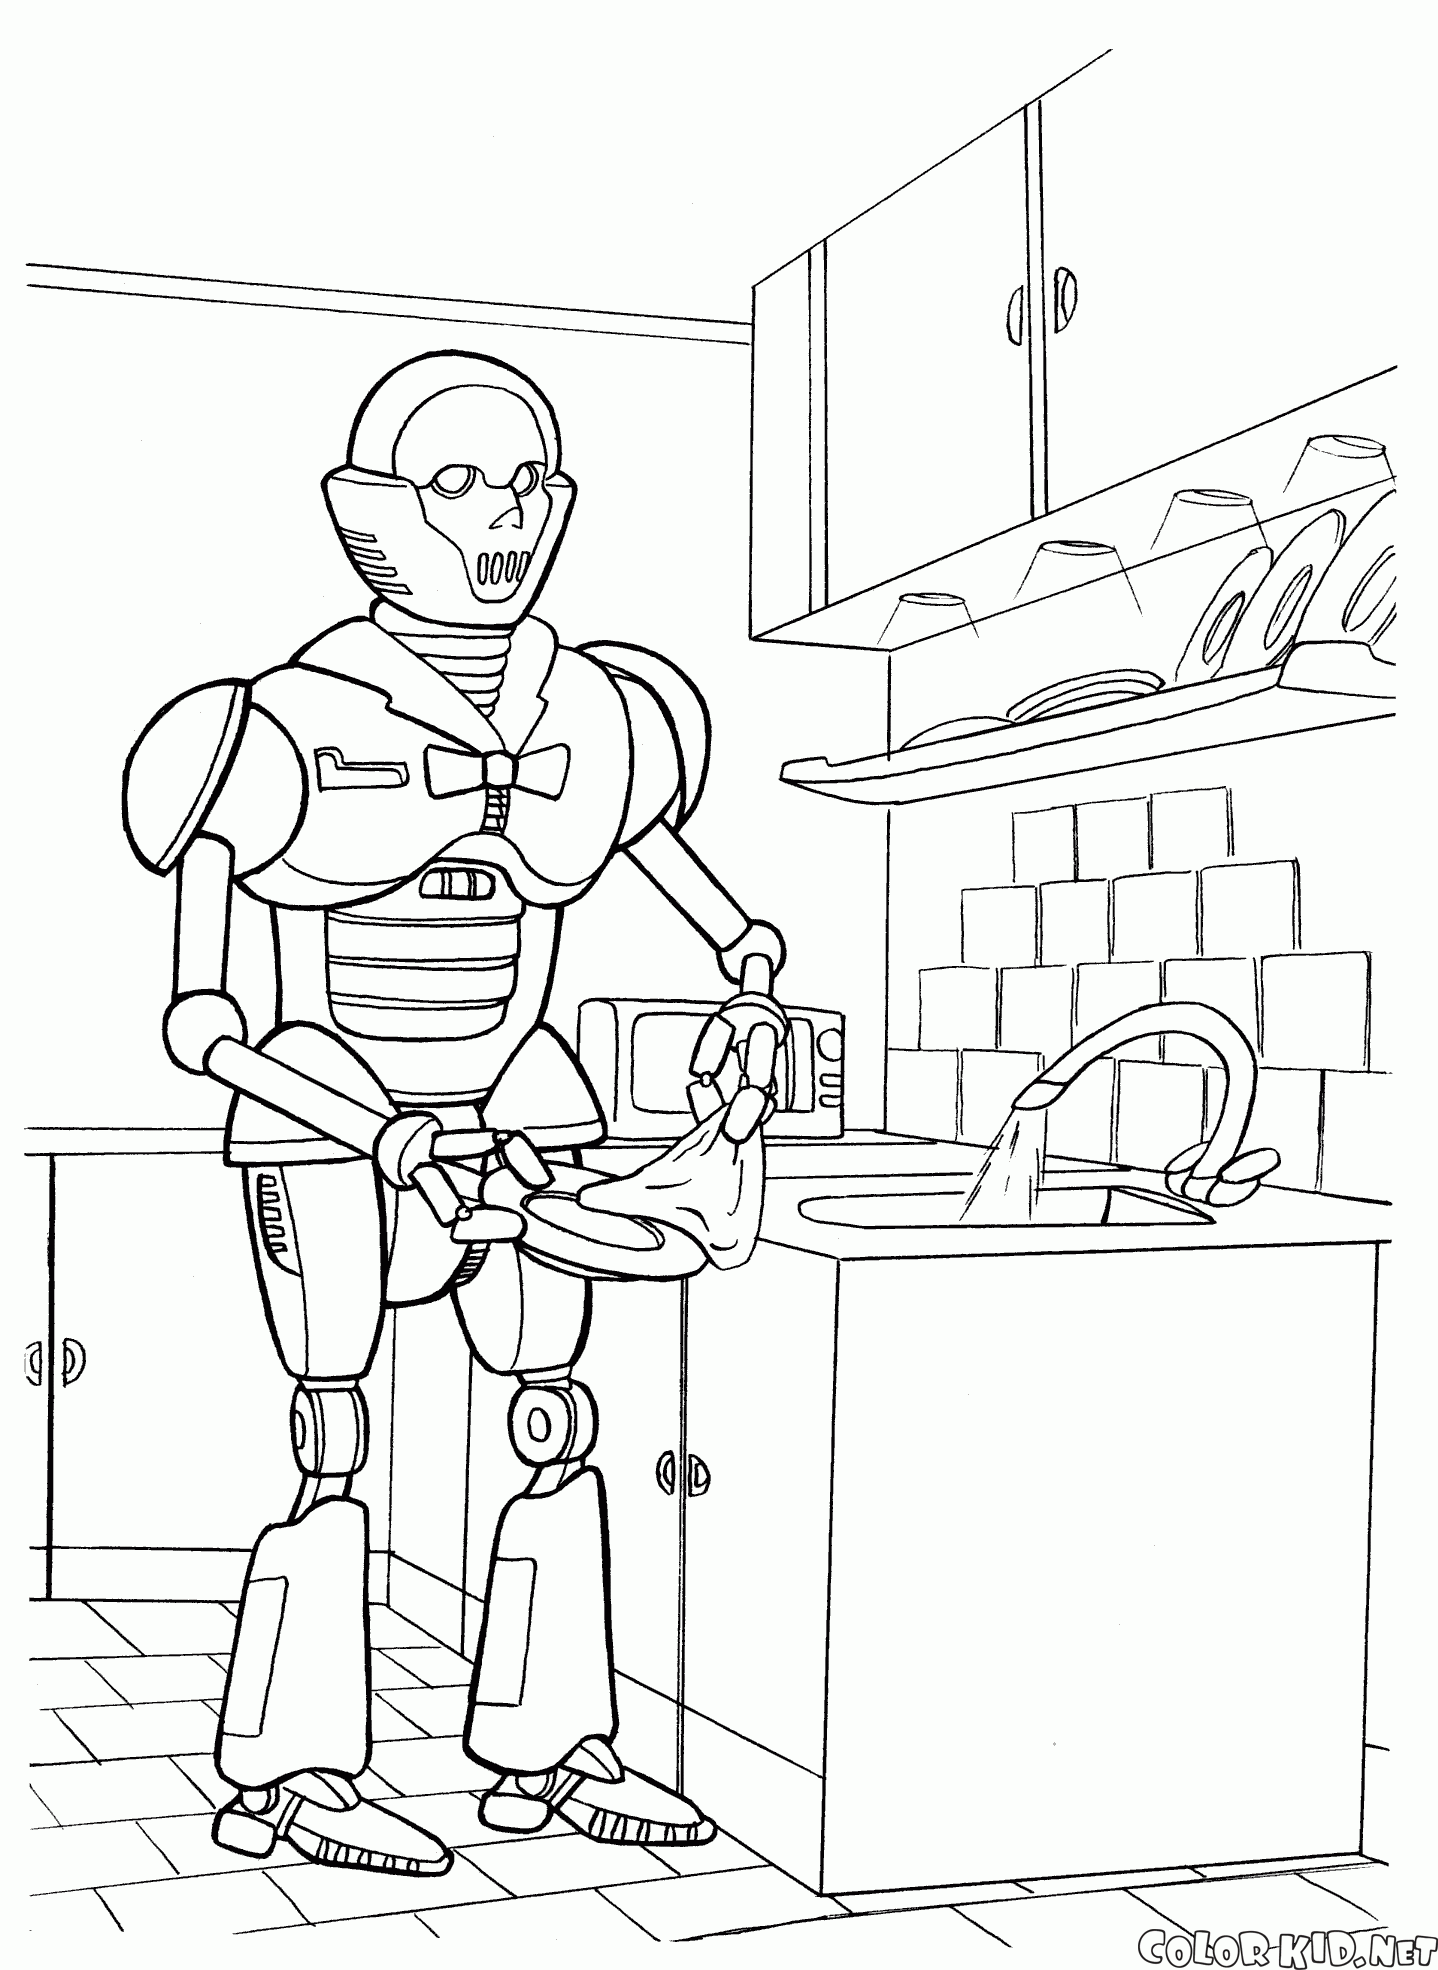 Dibujo para colorear - Robot de cocina